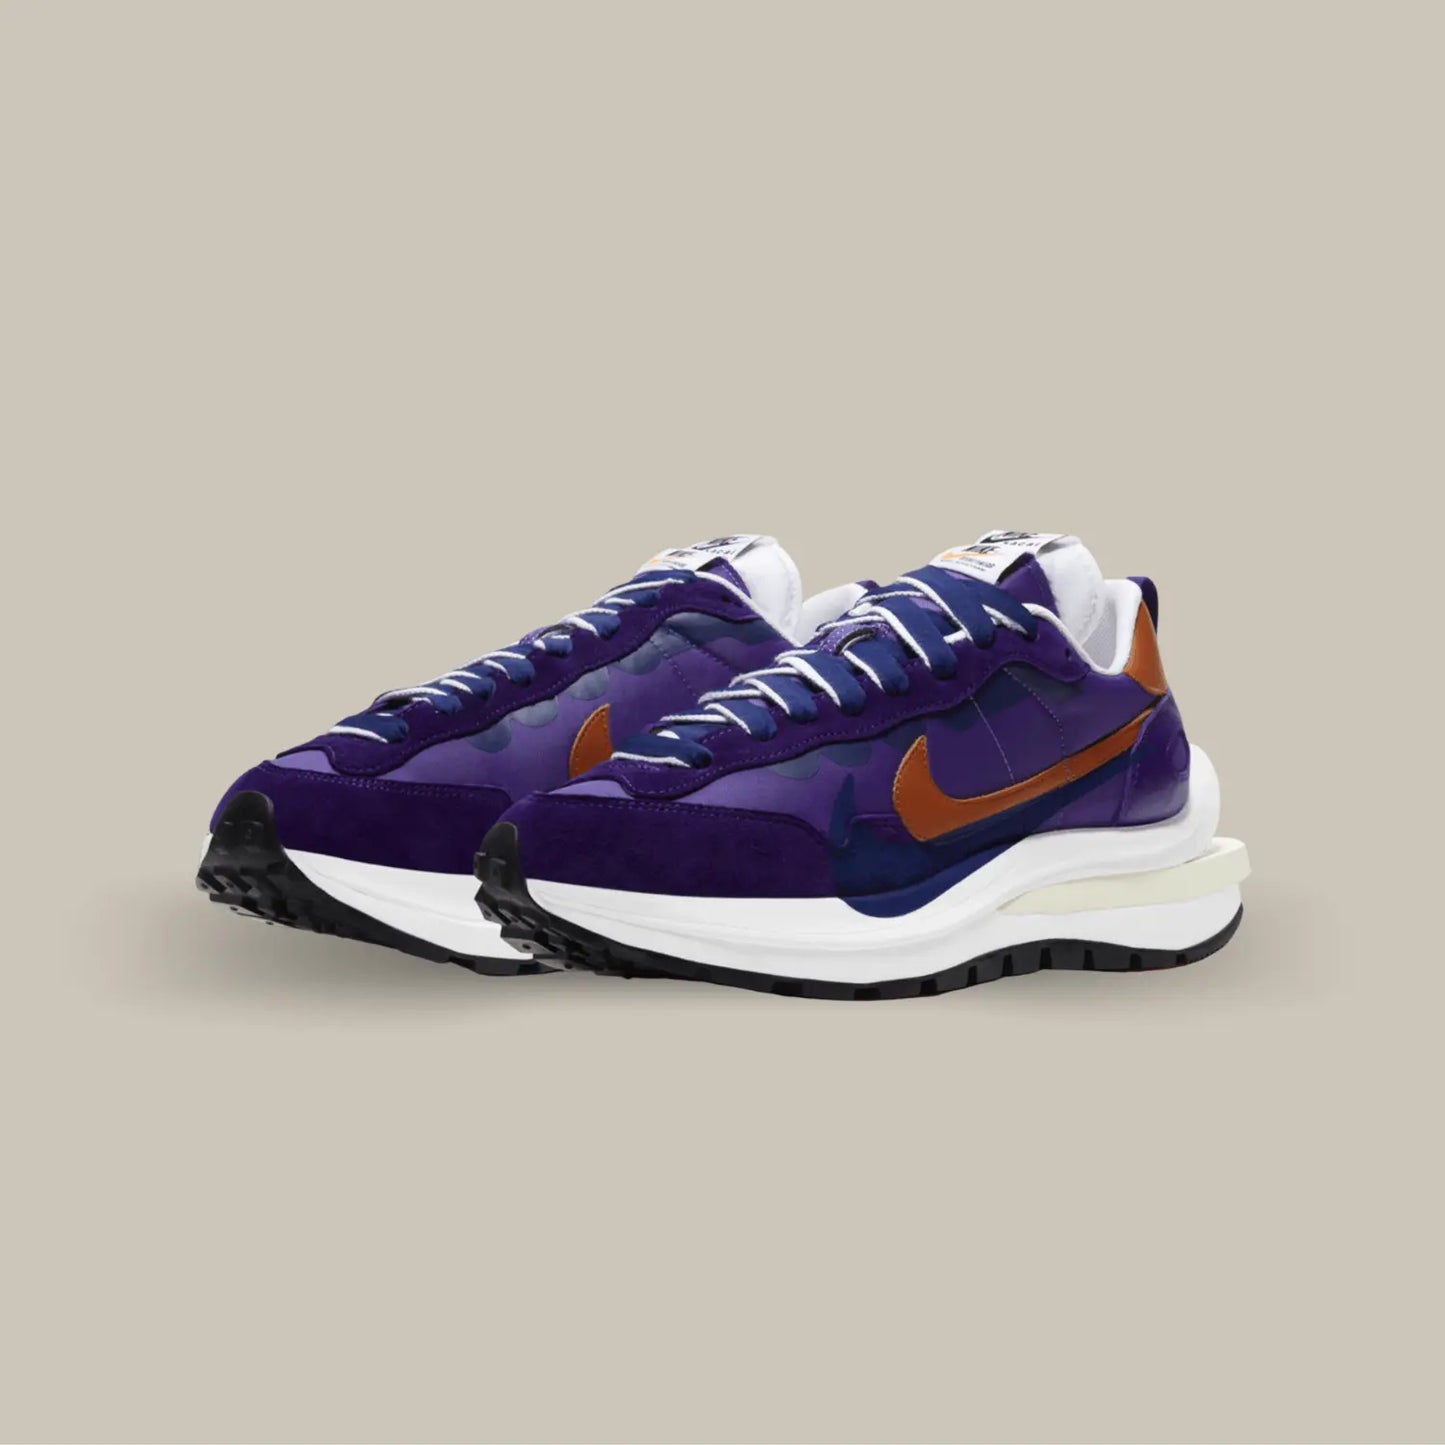 La Nike Vaporwaffle Sacai Dark Iris possède une tige en nylon violet avec des empiècements en daim dans un mélange de nuances violettes profondes et de nuances bleu nuit. On trouve un swoosh marron accordé au heel tab qui contrastent avec le tout.